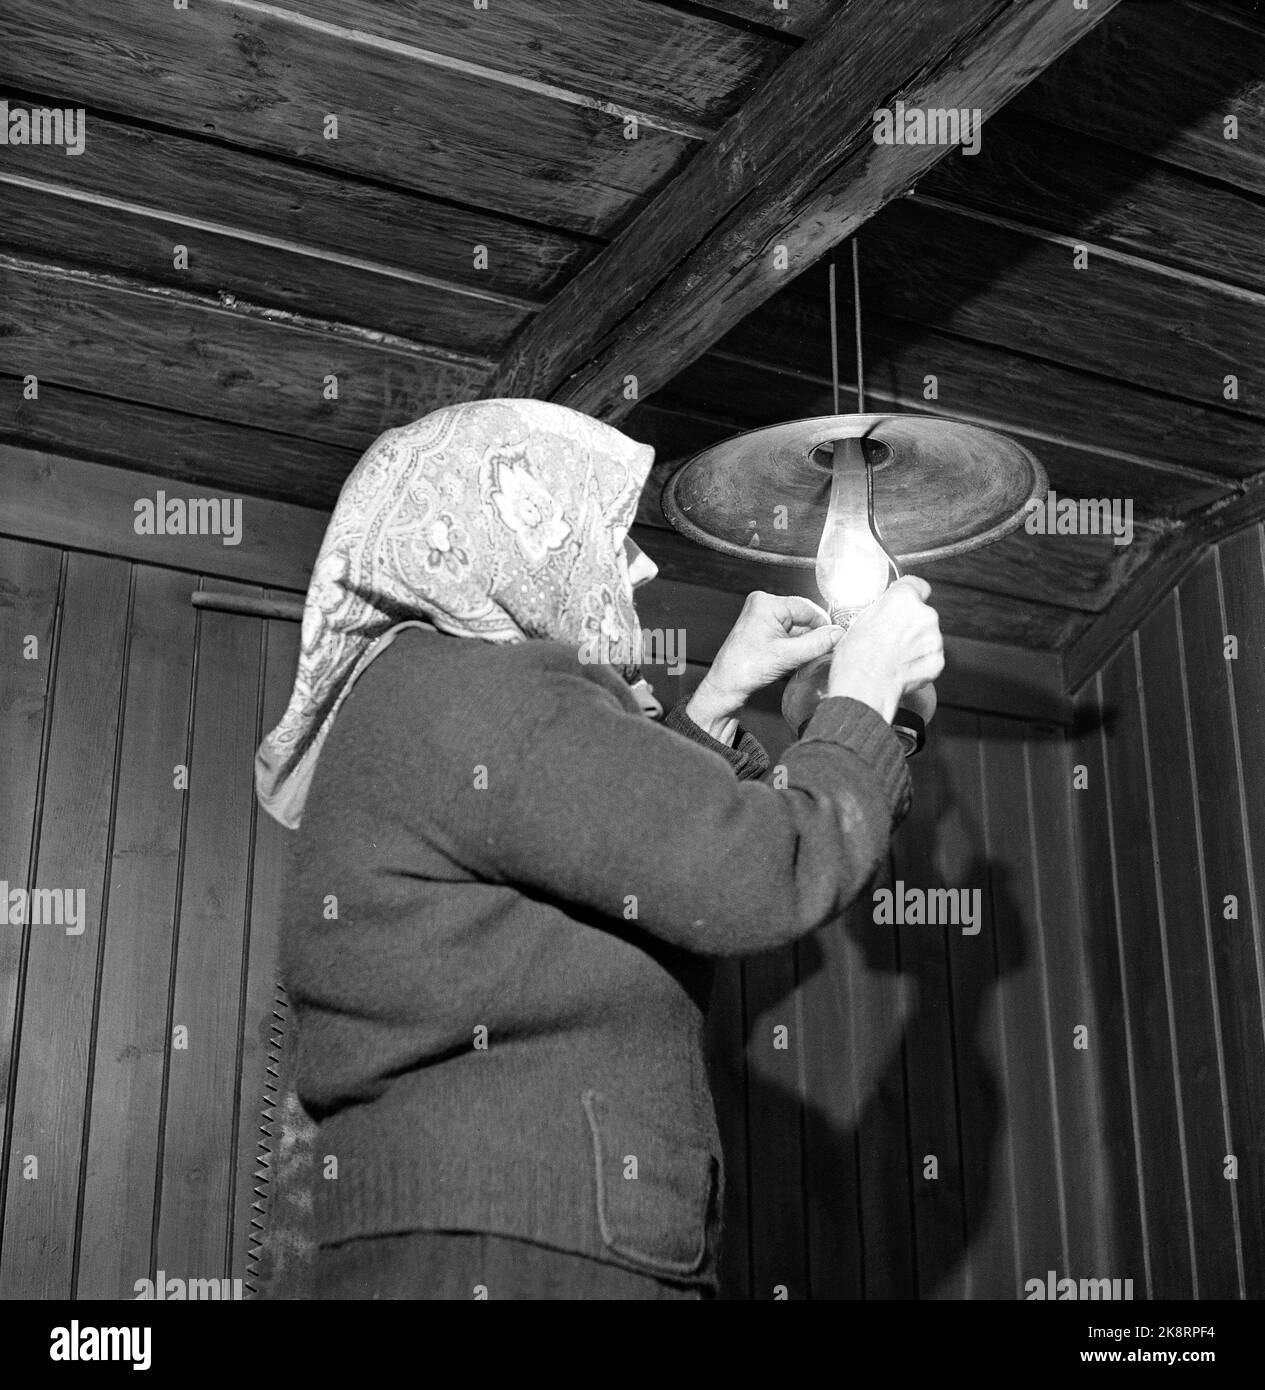 Dalen dans Telemark, février 1955. Ingerine et Gurine Schvenius (83 et 81 ans) vivent seuls dans la région du Roi carré ou Rui dans la vallée du Telemark. Le temps est resté dans cette petite place haute dans le monde de montagne. Ici, la lampe à paraffine Ingerine s'allume. Photo: Aage Storløkken / actuel / NTB Banque D'Images